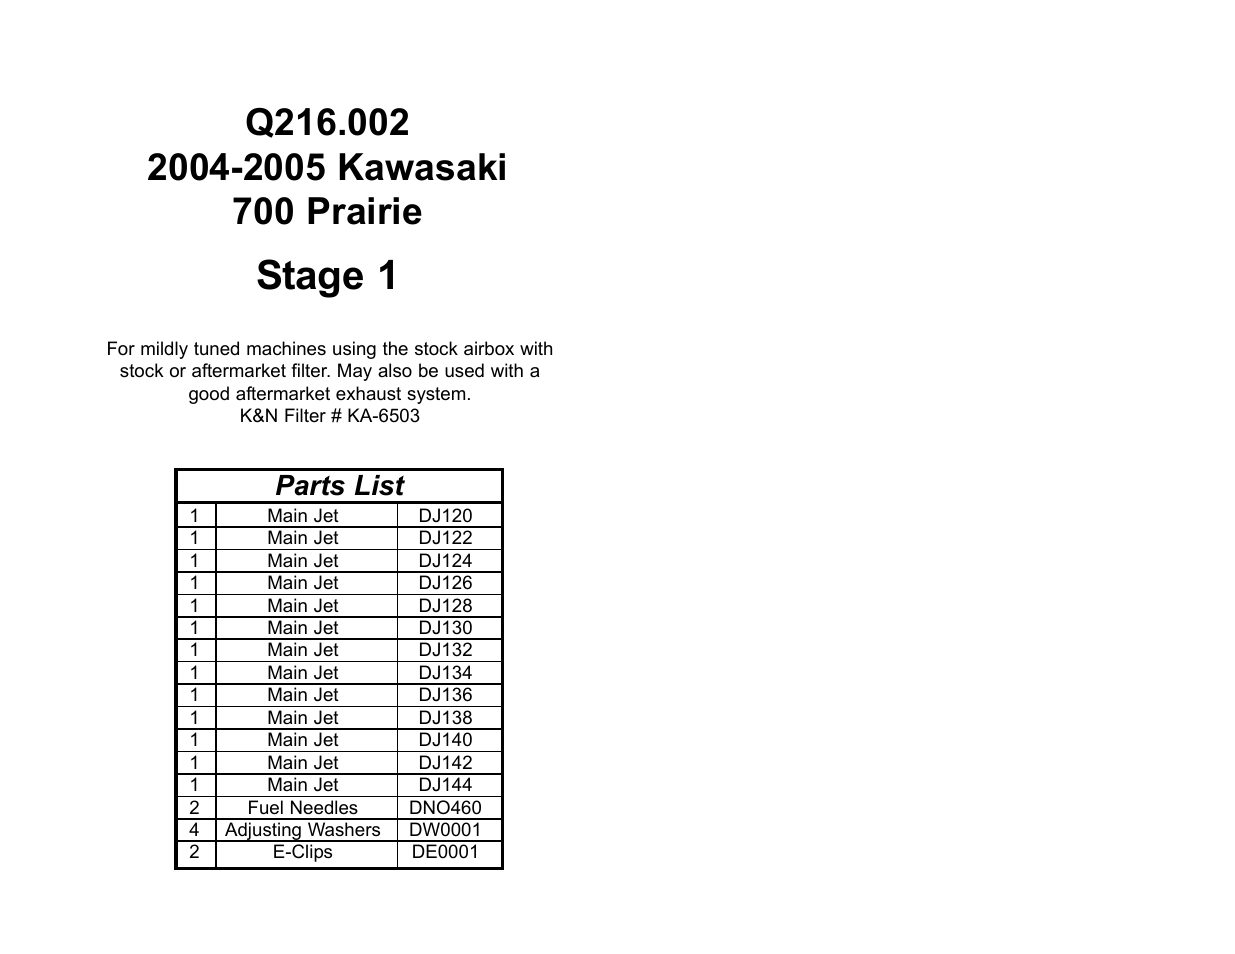 DynoJet Jet Kit for Kawasaki Prairie 700 (04-06)